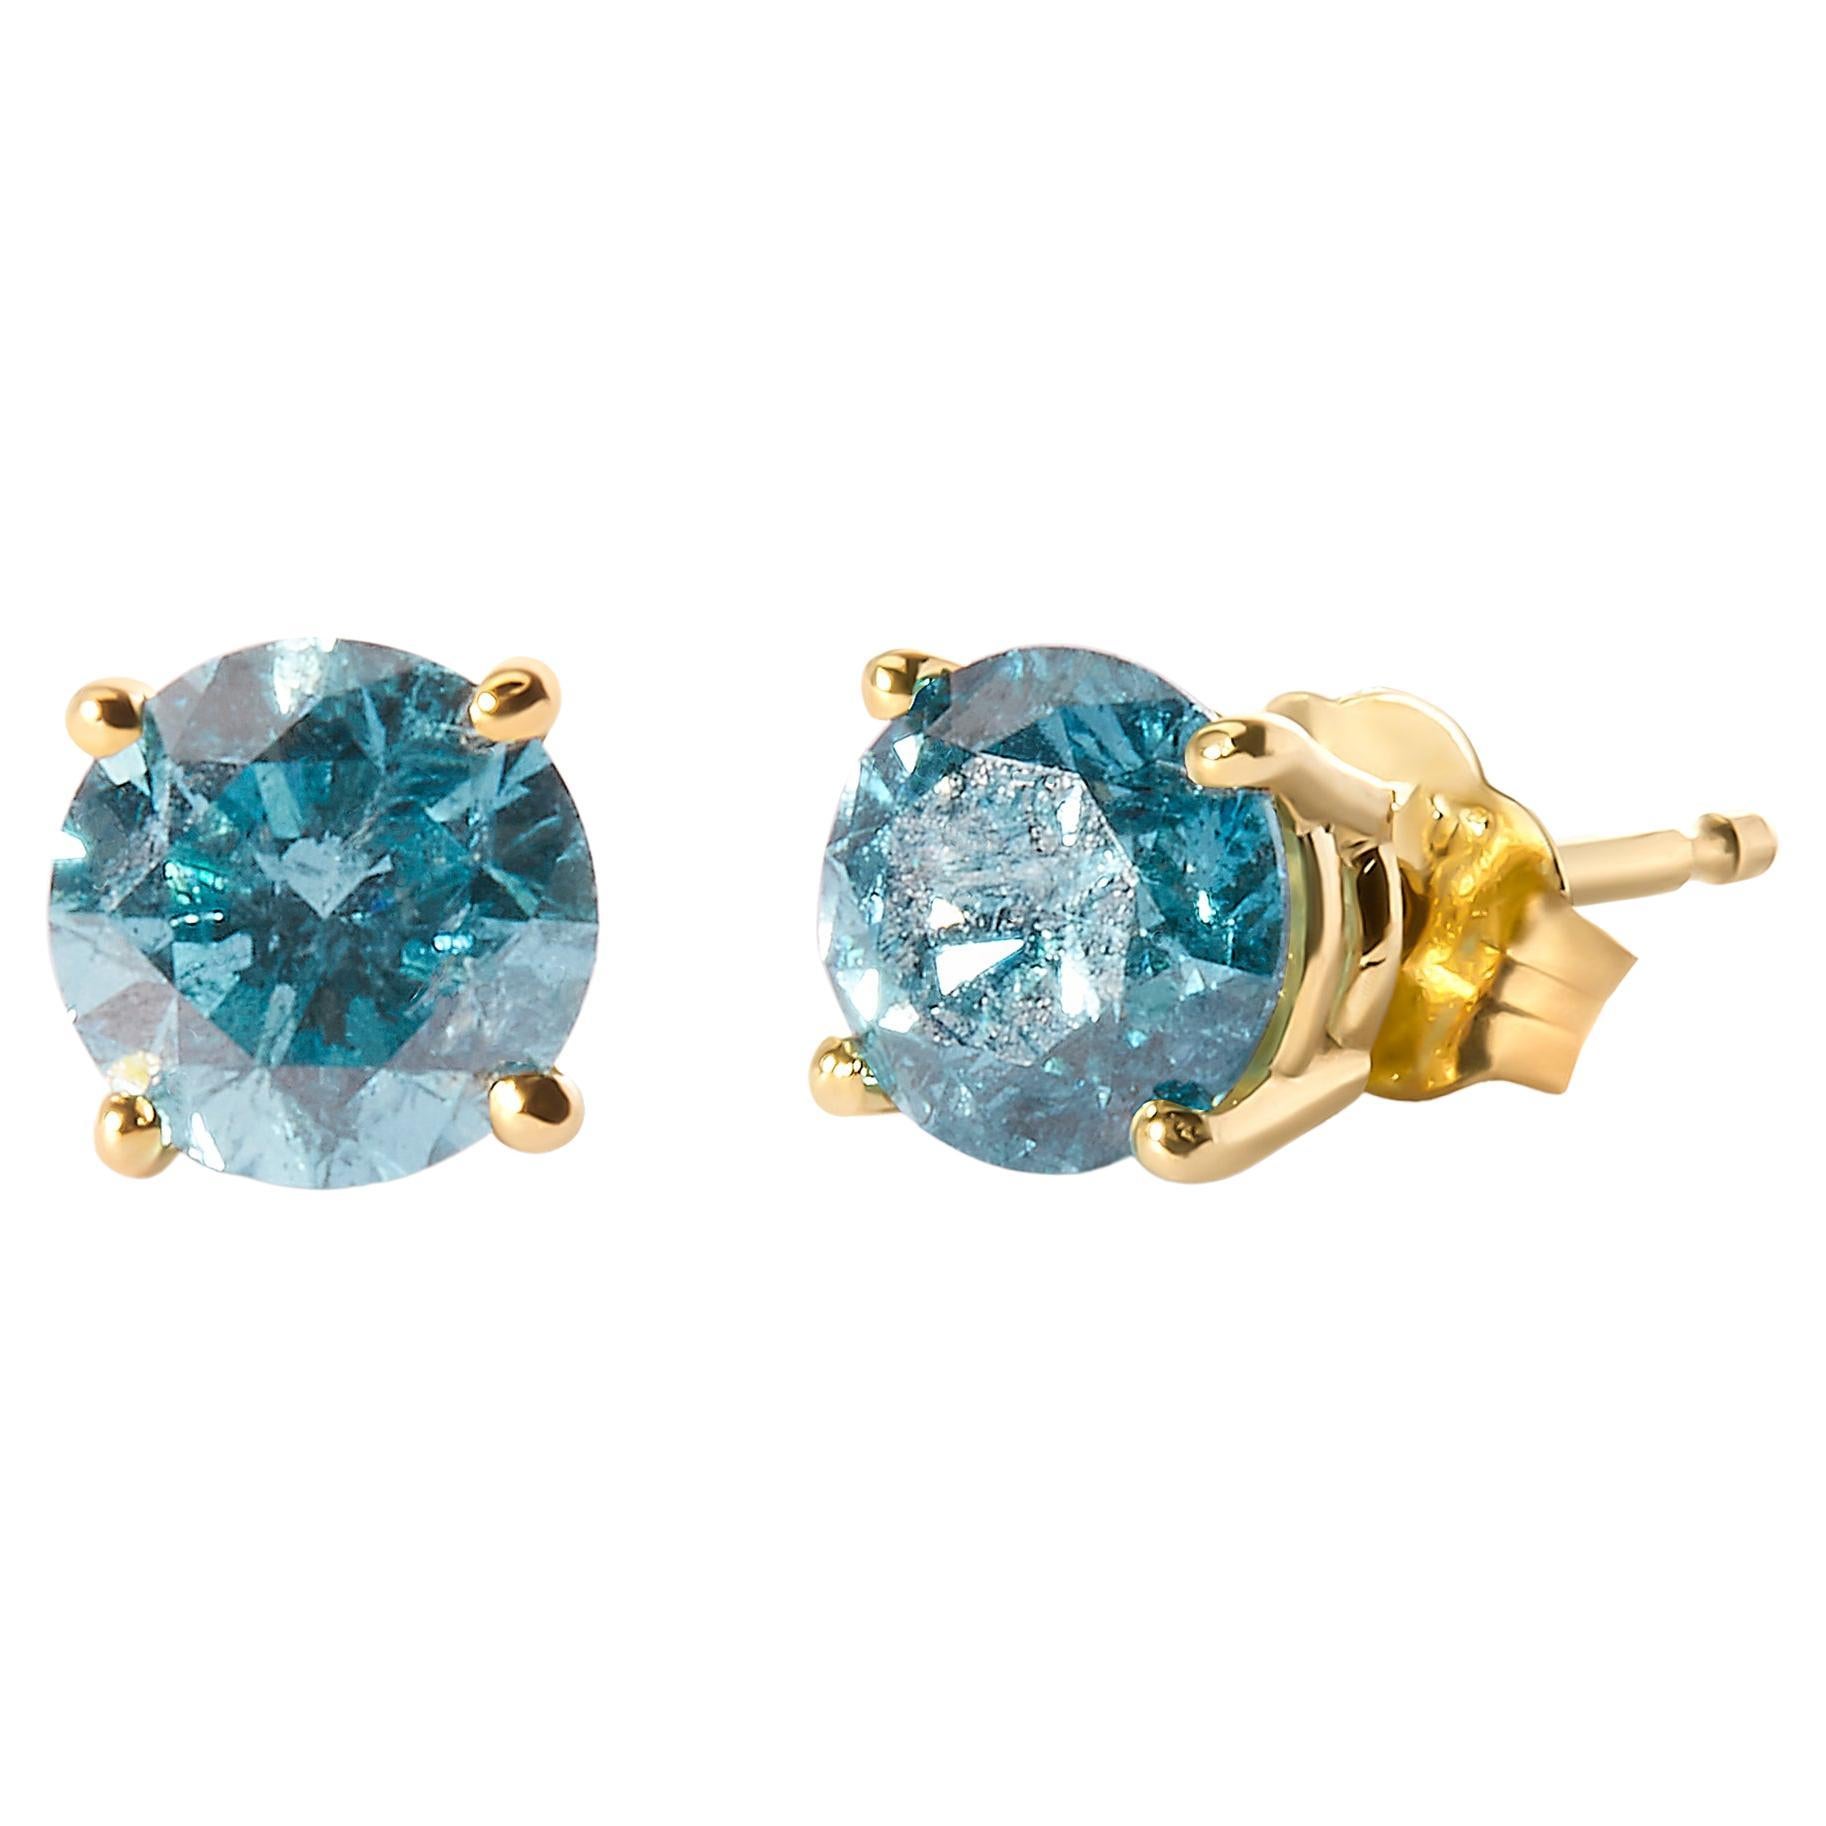 Clous d'oreilles solitaires en or jaune 14 carats avec diamants bleu turquoise traités de 1,0 carat